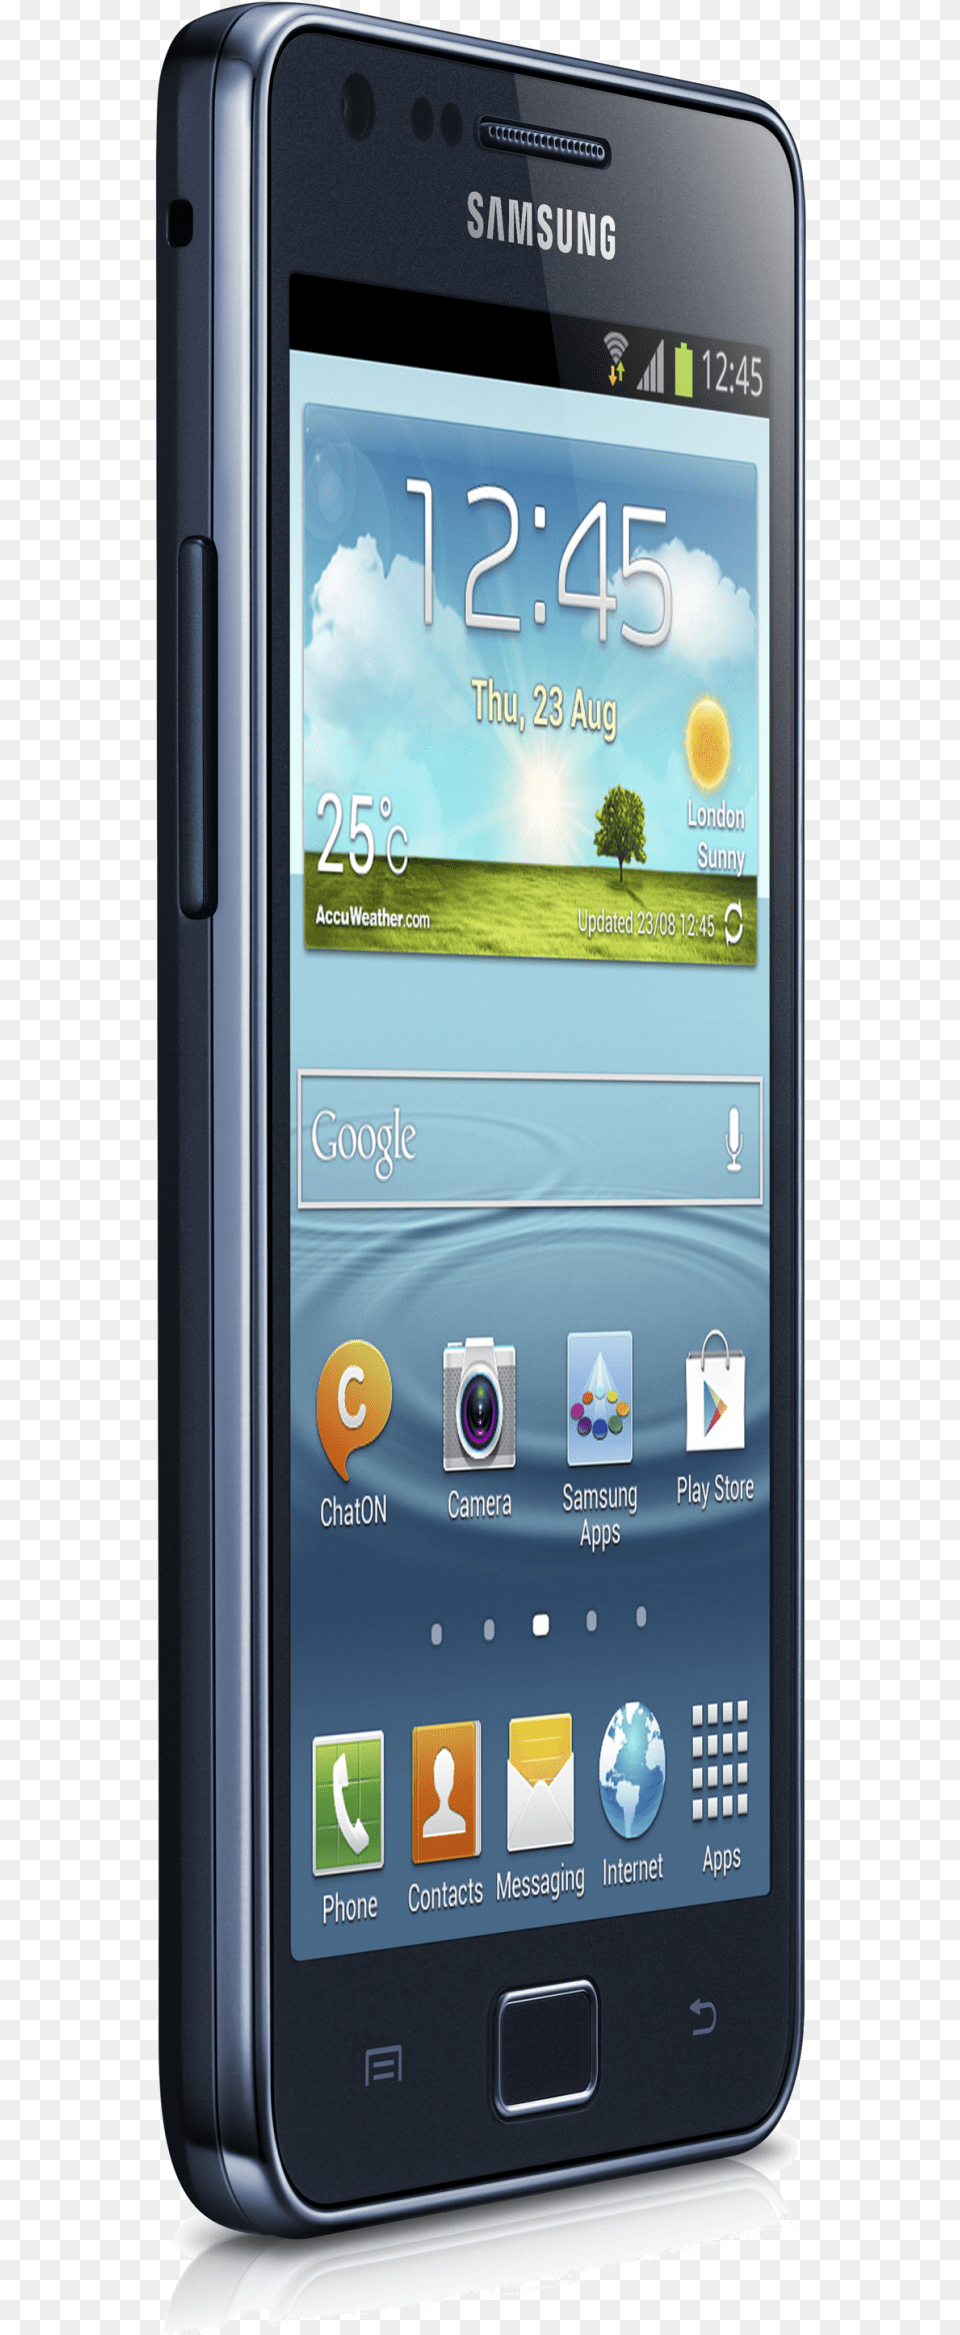 Samsung Galaxy S Ii Plus Samsung Galaxy S Ii Plus Samsung Galaxy S2 Plus Blue, Electronics, Mobile Phone, Phone Png